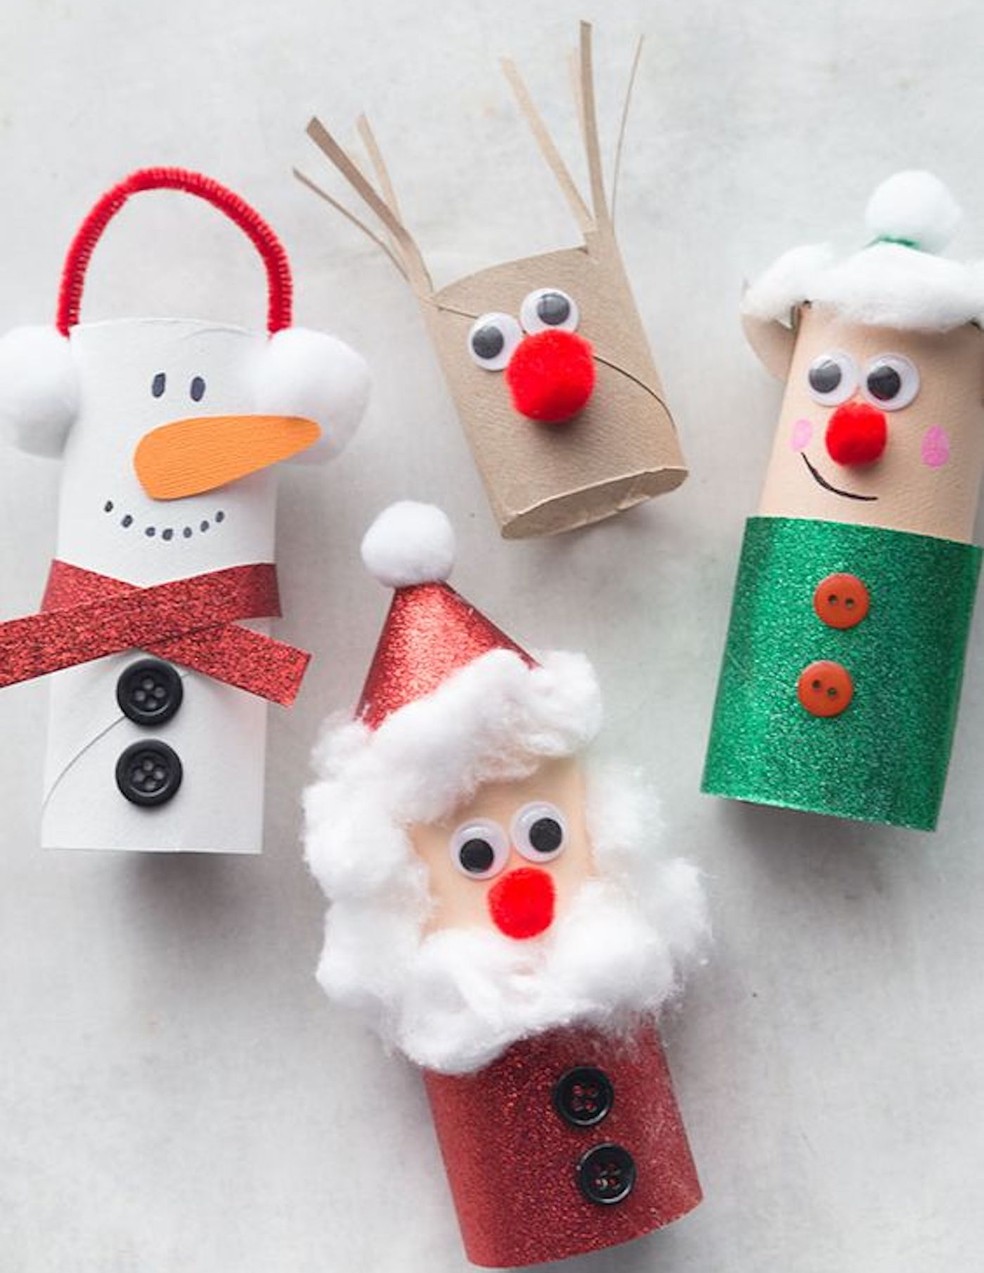 Rolos de papel-higiênico se transformam em enfeites para o cantinho do Natal — Foto: Pinterest / The Best Ideas for Kids / Reprodução